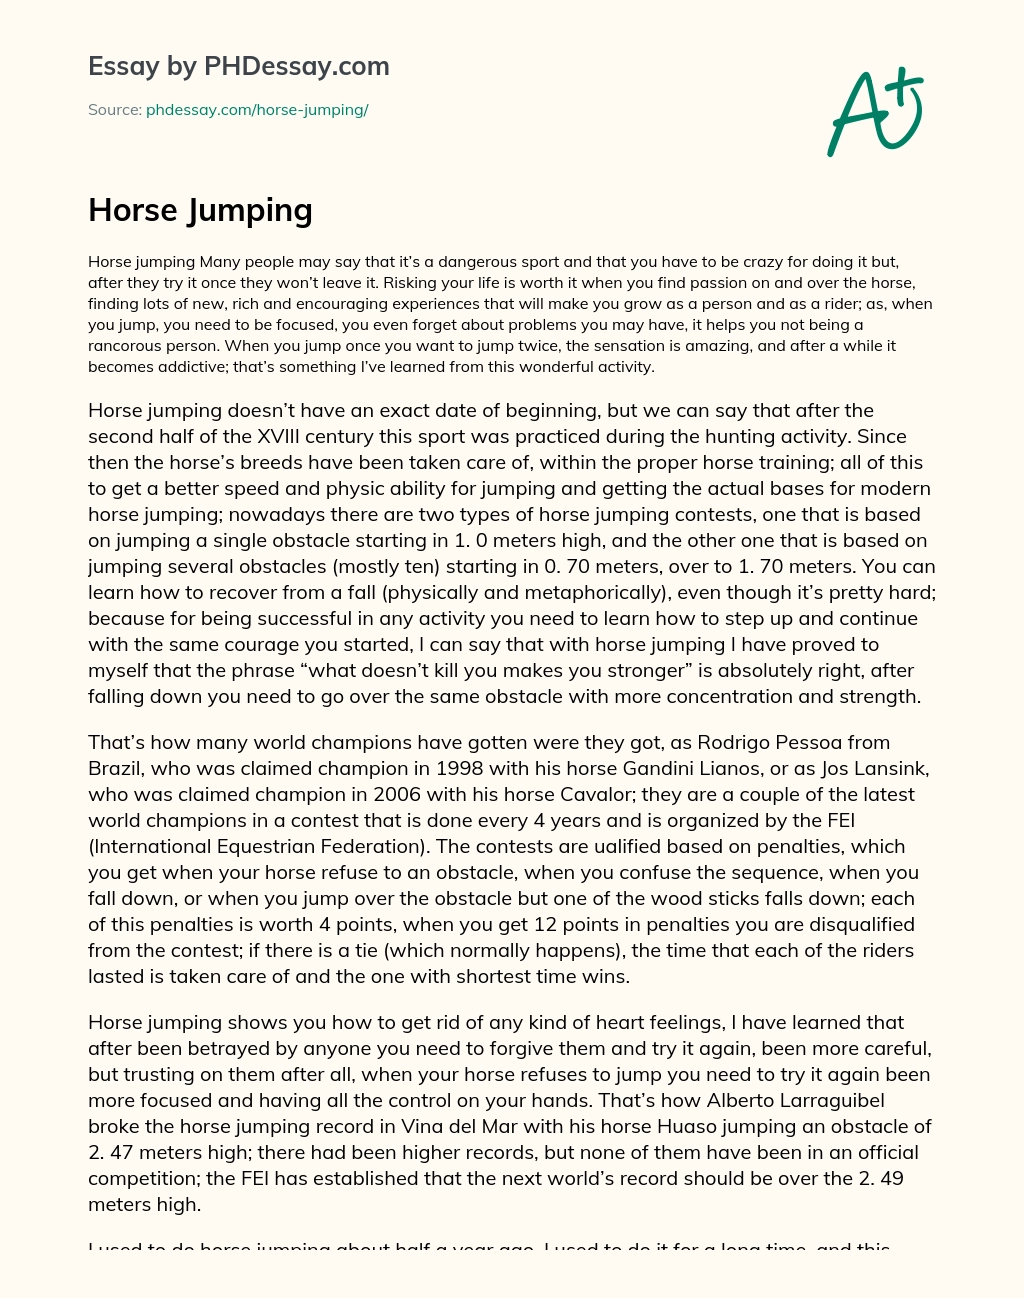 Horse Jumping essay